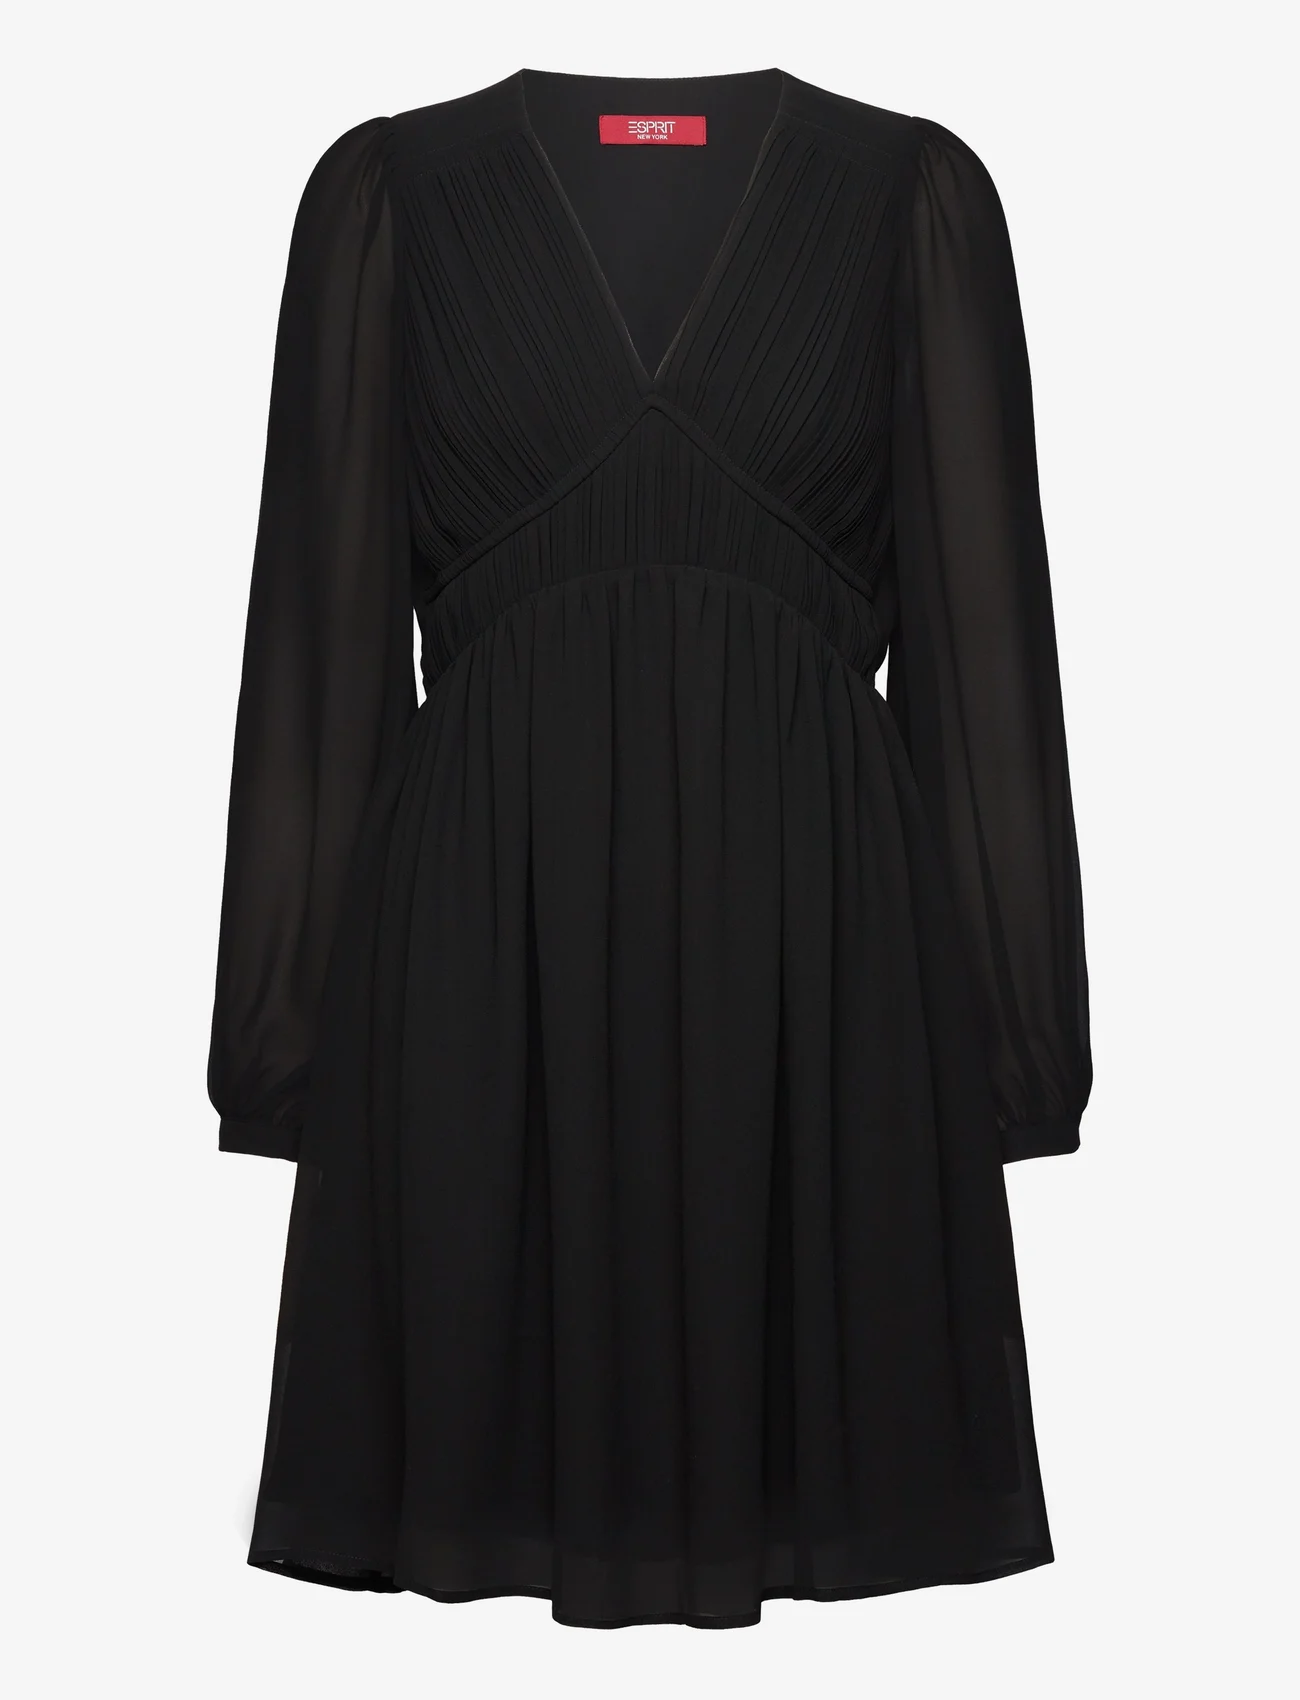 Esprit Casual - Dresses light woven - robes de fête - black - 0